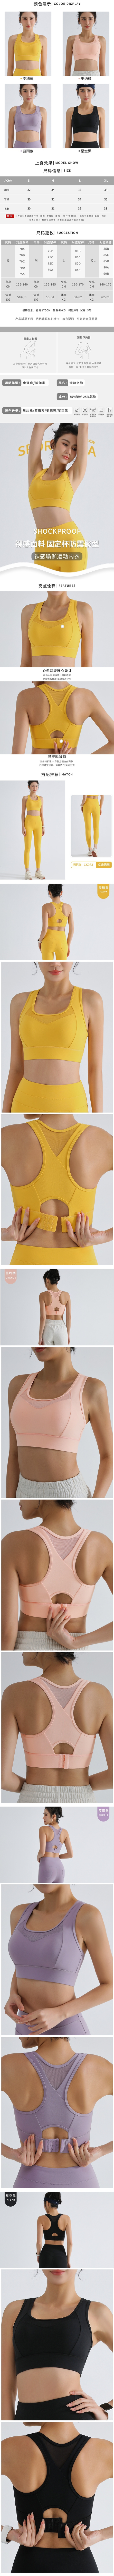 玩美衣櫃高強度防震健身瑜珈跑步運動內衣S-XL(共4色)